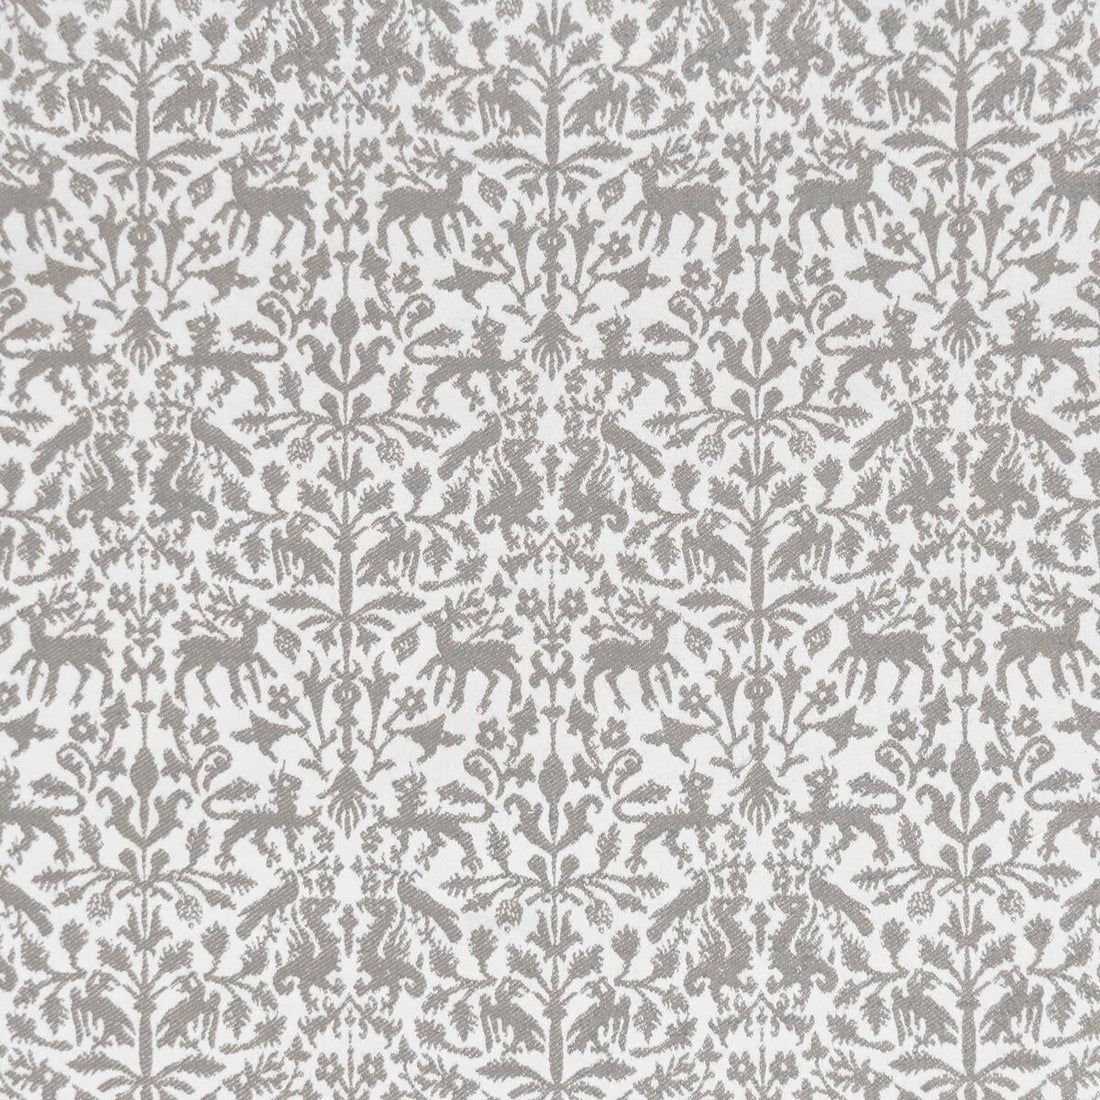 Augusta Emerita fabric in beige color - pattern LCT1112.001.0 - by Gaston y Daniela in the Lorenzo Castillo IX Hesperia collection